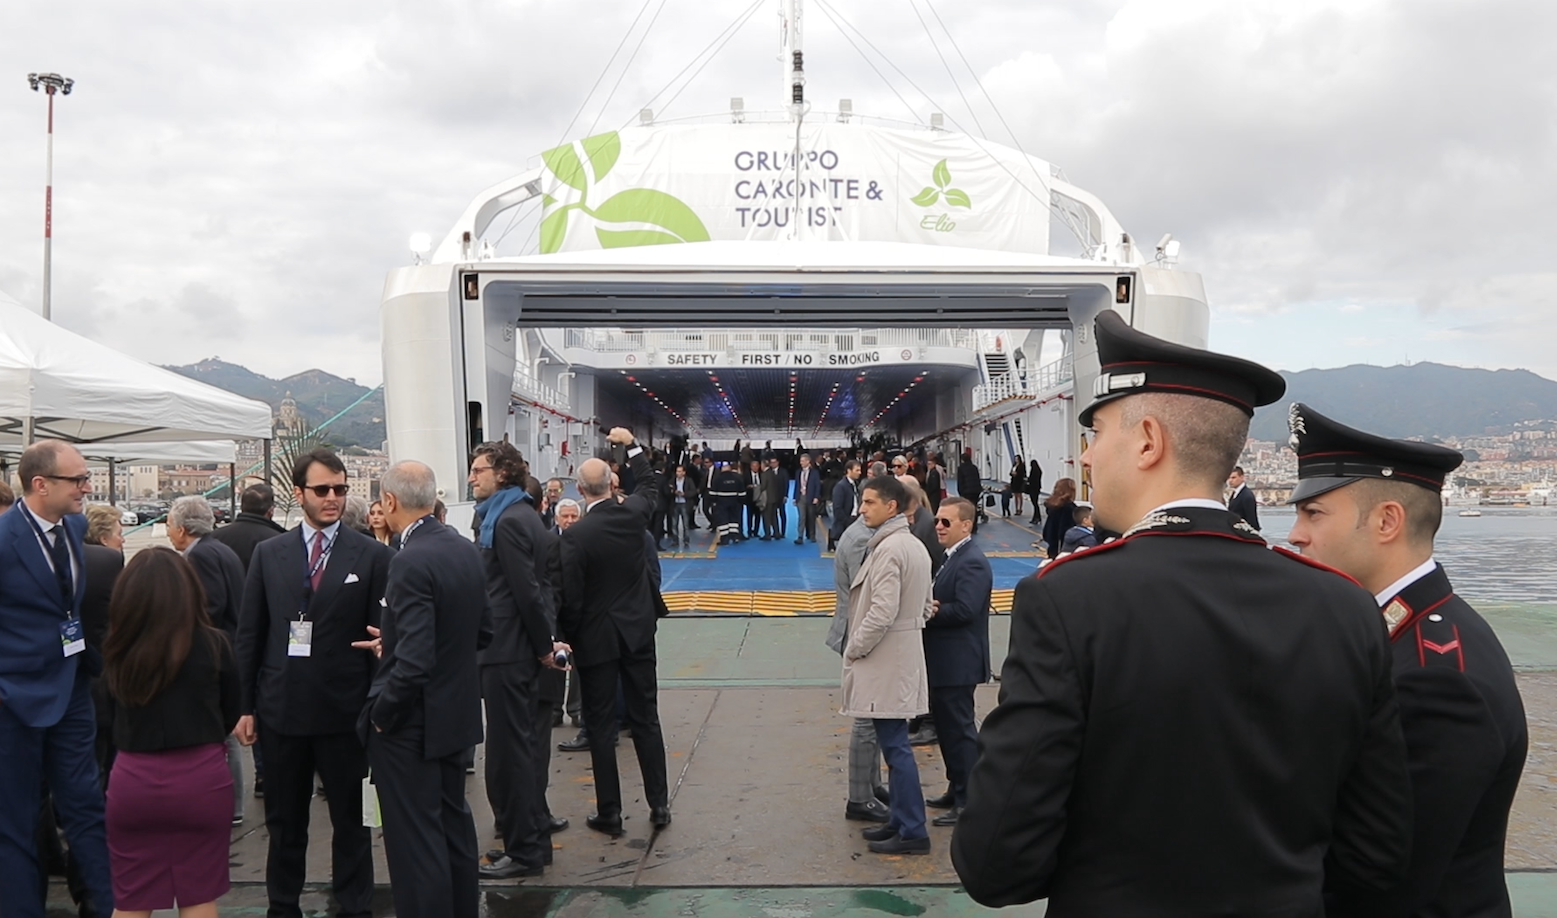 Caronte & Tourist takes delivery of LNG ferry Elio